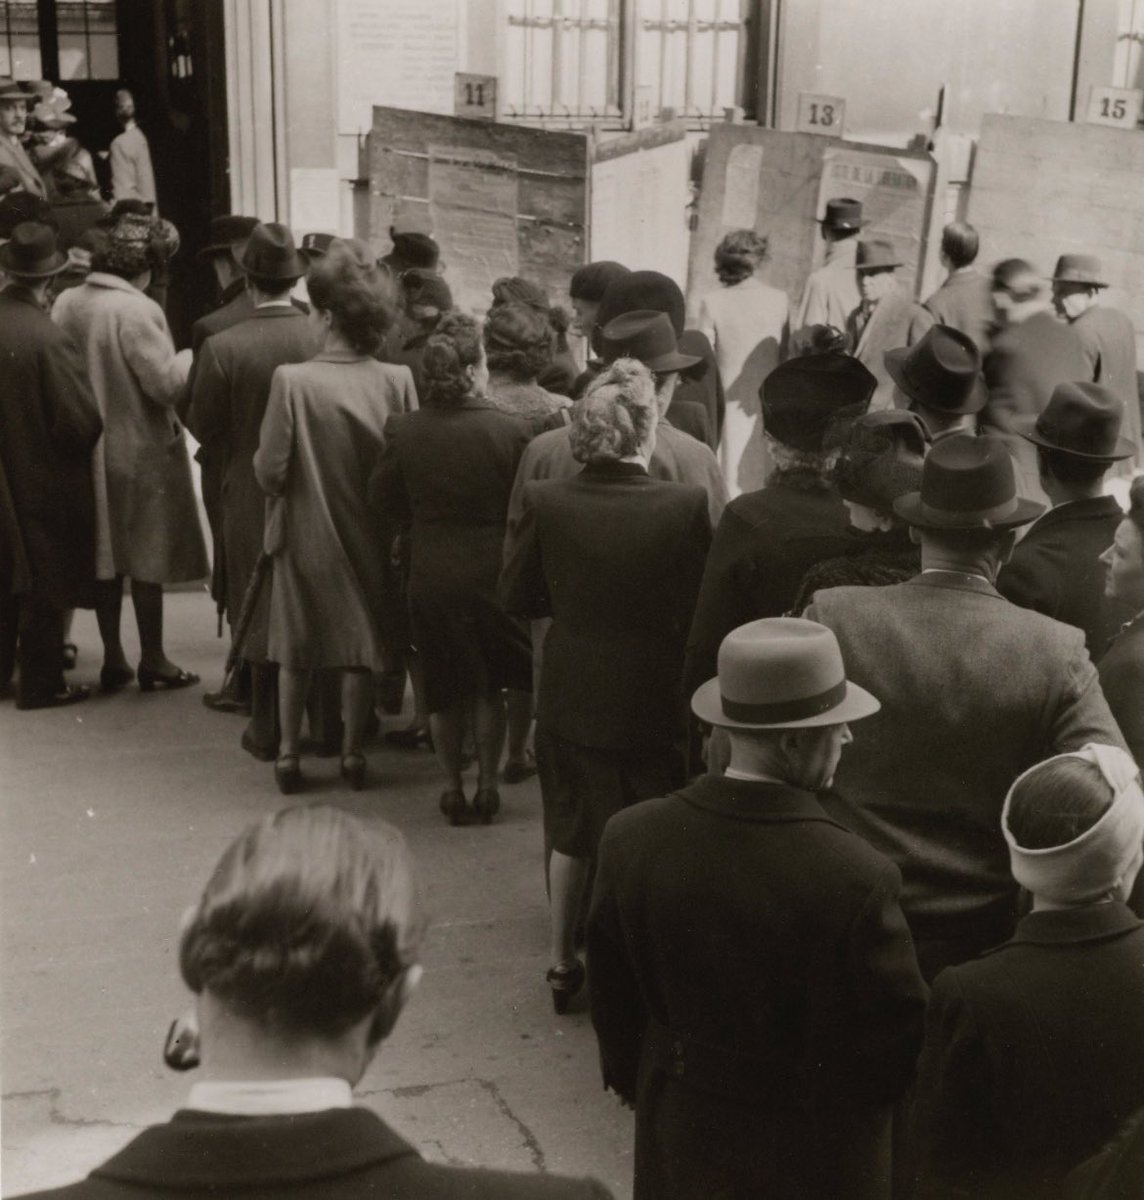 Le 29 avril 1945, lors des élections municipales, les femmes se rendent aux urnes pour la première fois ! Après avoir obtenu le droit de vote le 21 avril 1944, elles l’exercent concrètement un an plus tard. Un droit essentiel et sacré !